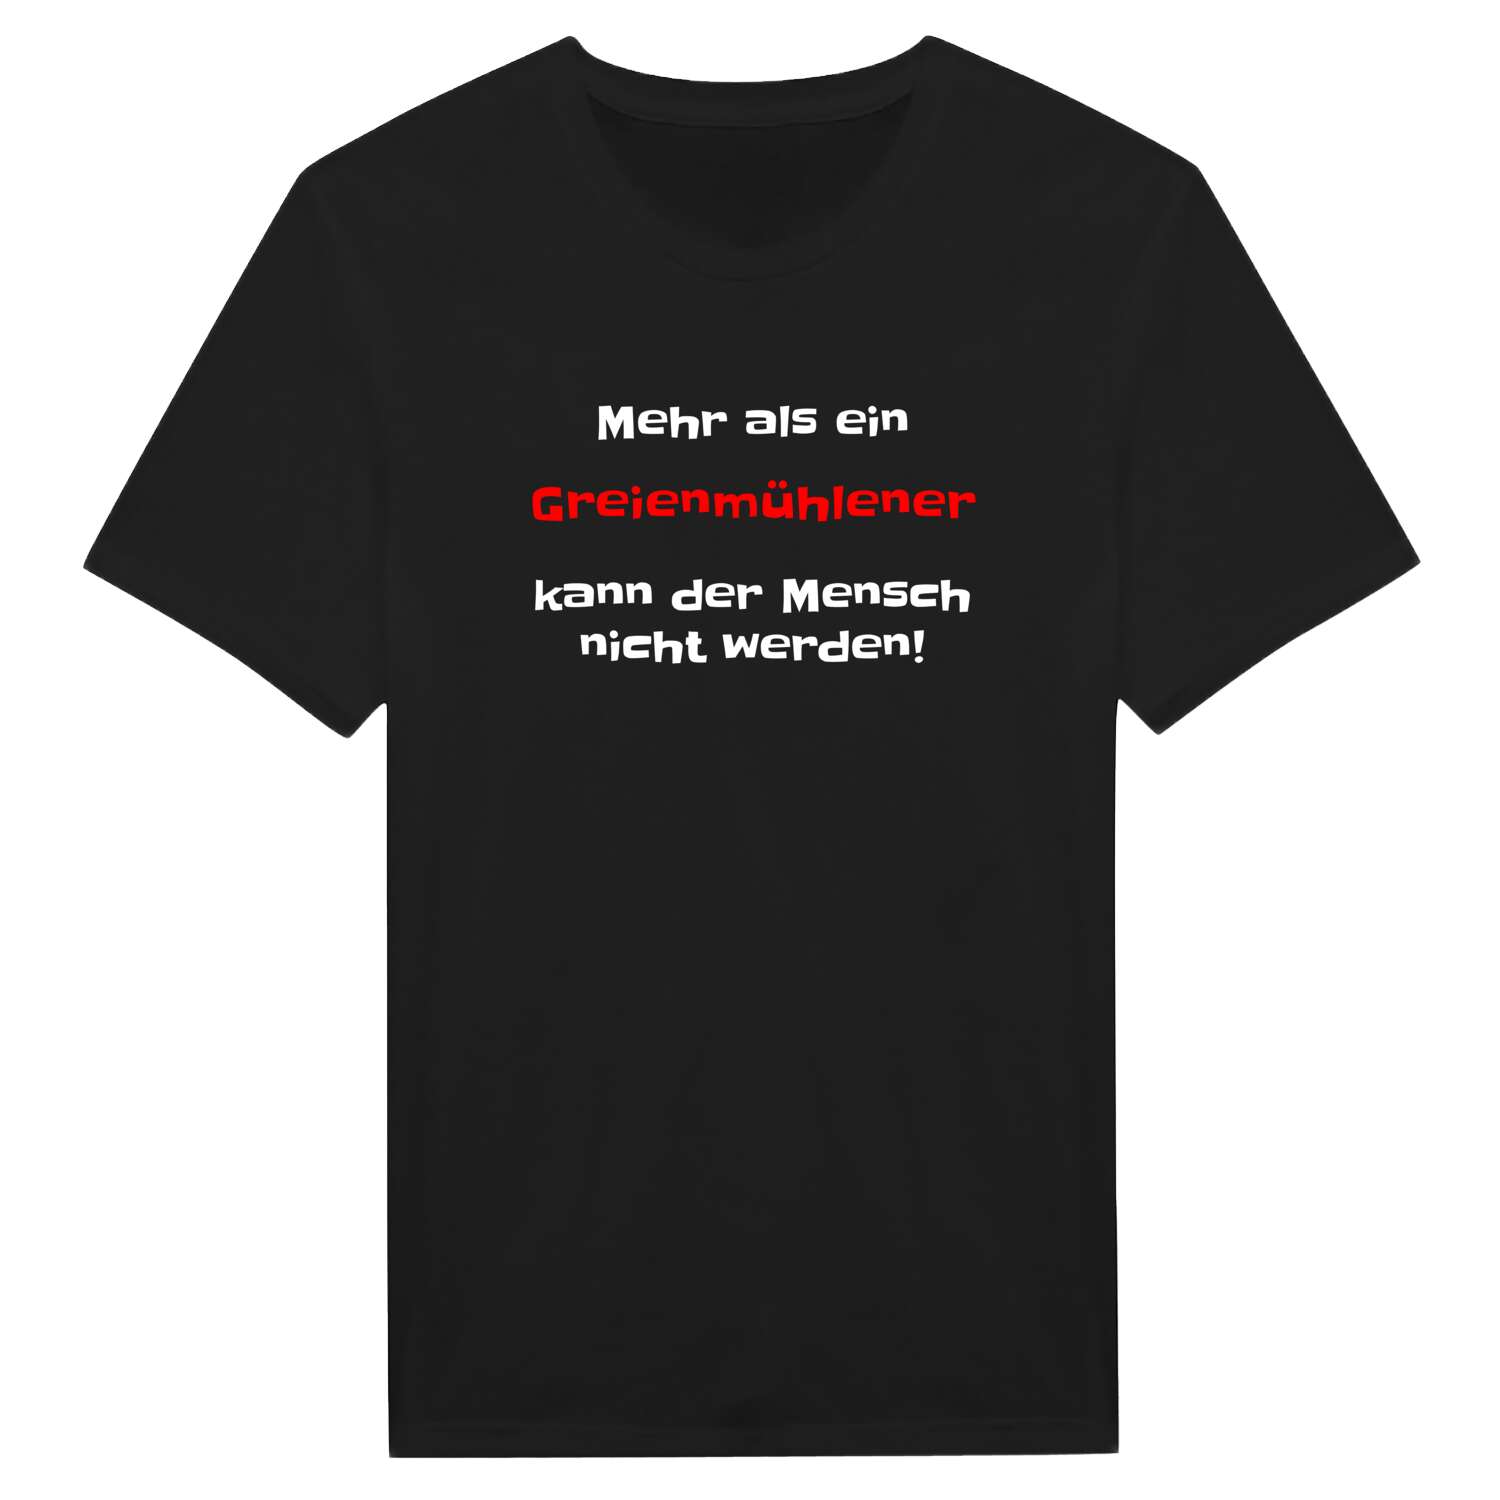 Greienmühle T-Shirt »Mehr als ein«